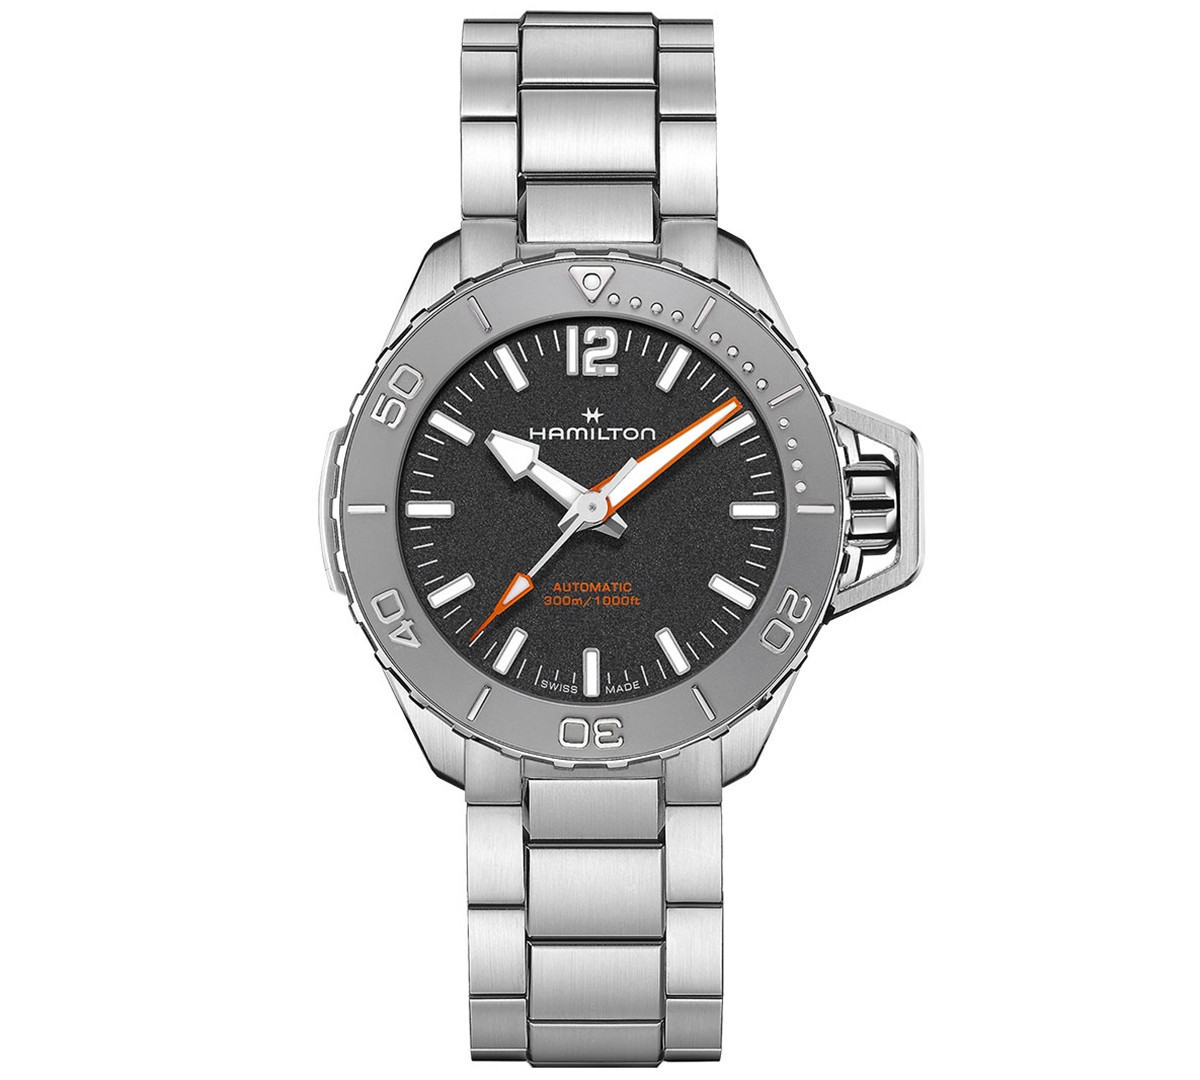 Men's Swiss Automatic Khaki Navy Frogman Stainless Steel Bracelet Watch 41mm - Silver